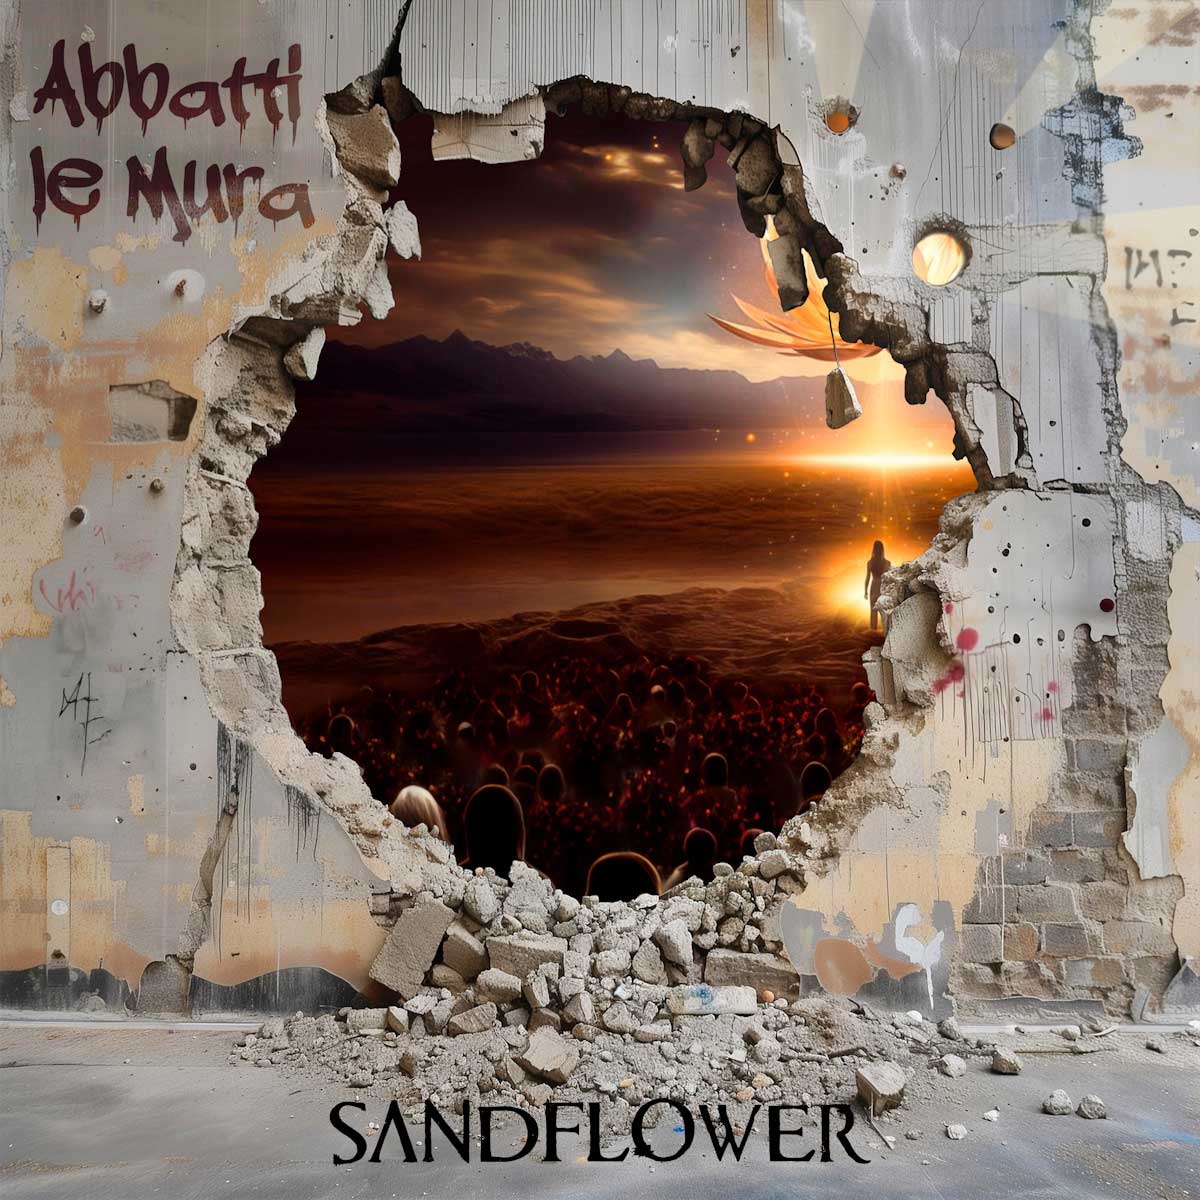 “Abbatti le mura” il nuovo singolo dei Sandflower